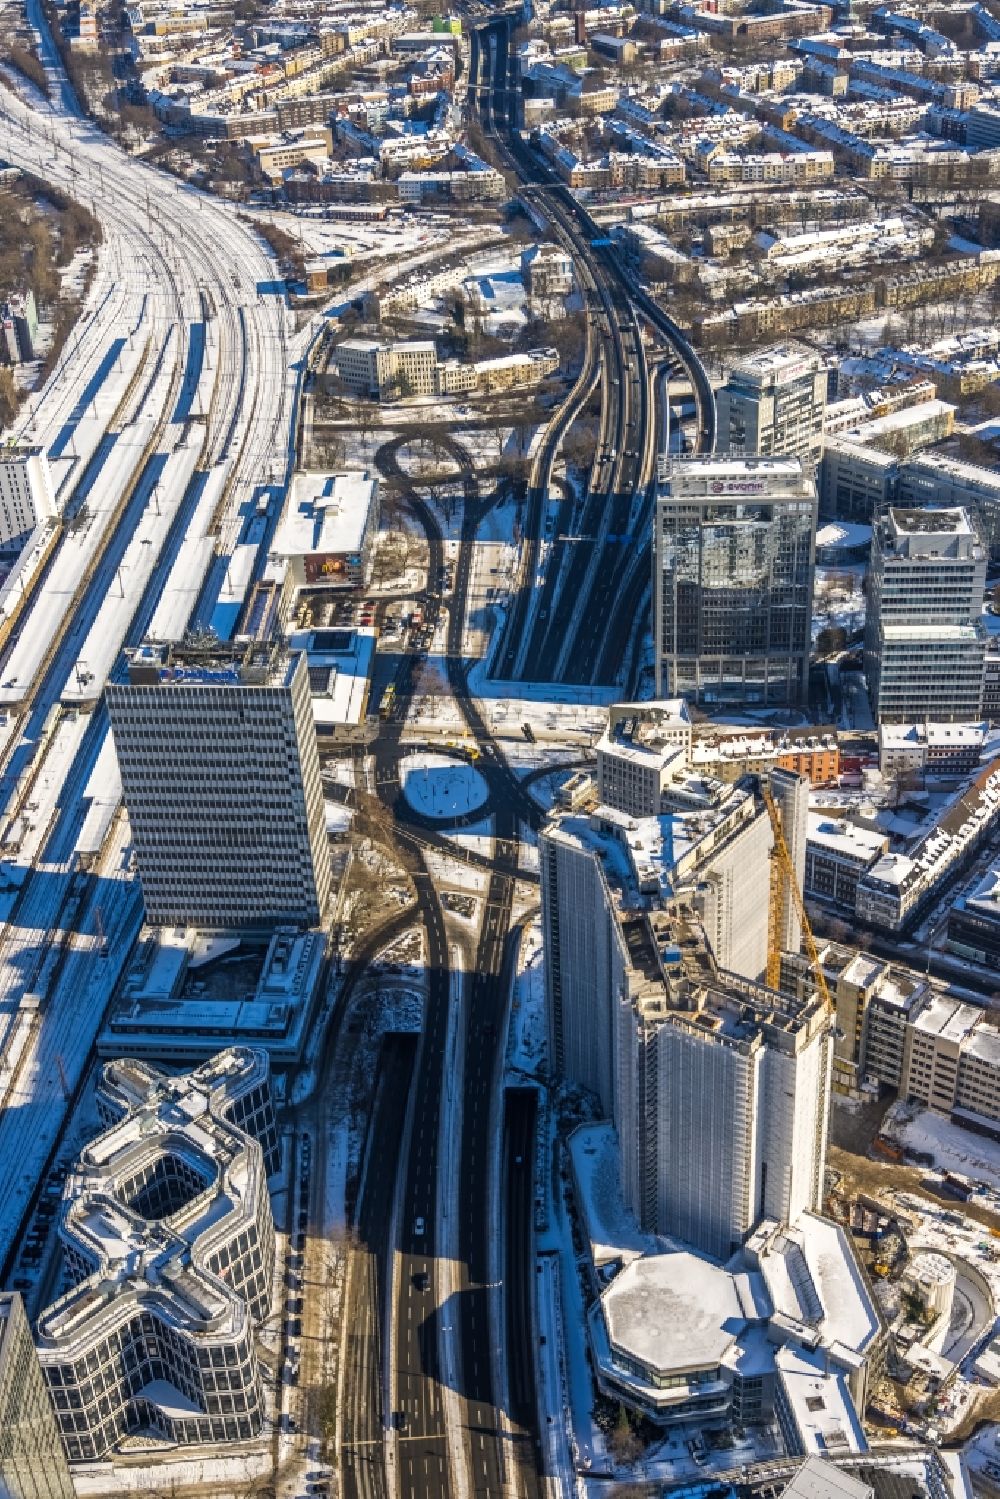 Luftbild Essen - Winterluftbild Abriß- Baustelle zum Rückbau des Hochhaus- Gebäude der ehemaligen RWE Zentrale in Essen im Bundesland Nordrhein-Westfalen, Deutschland